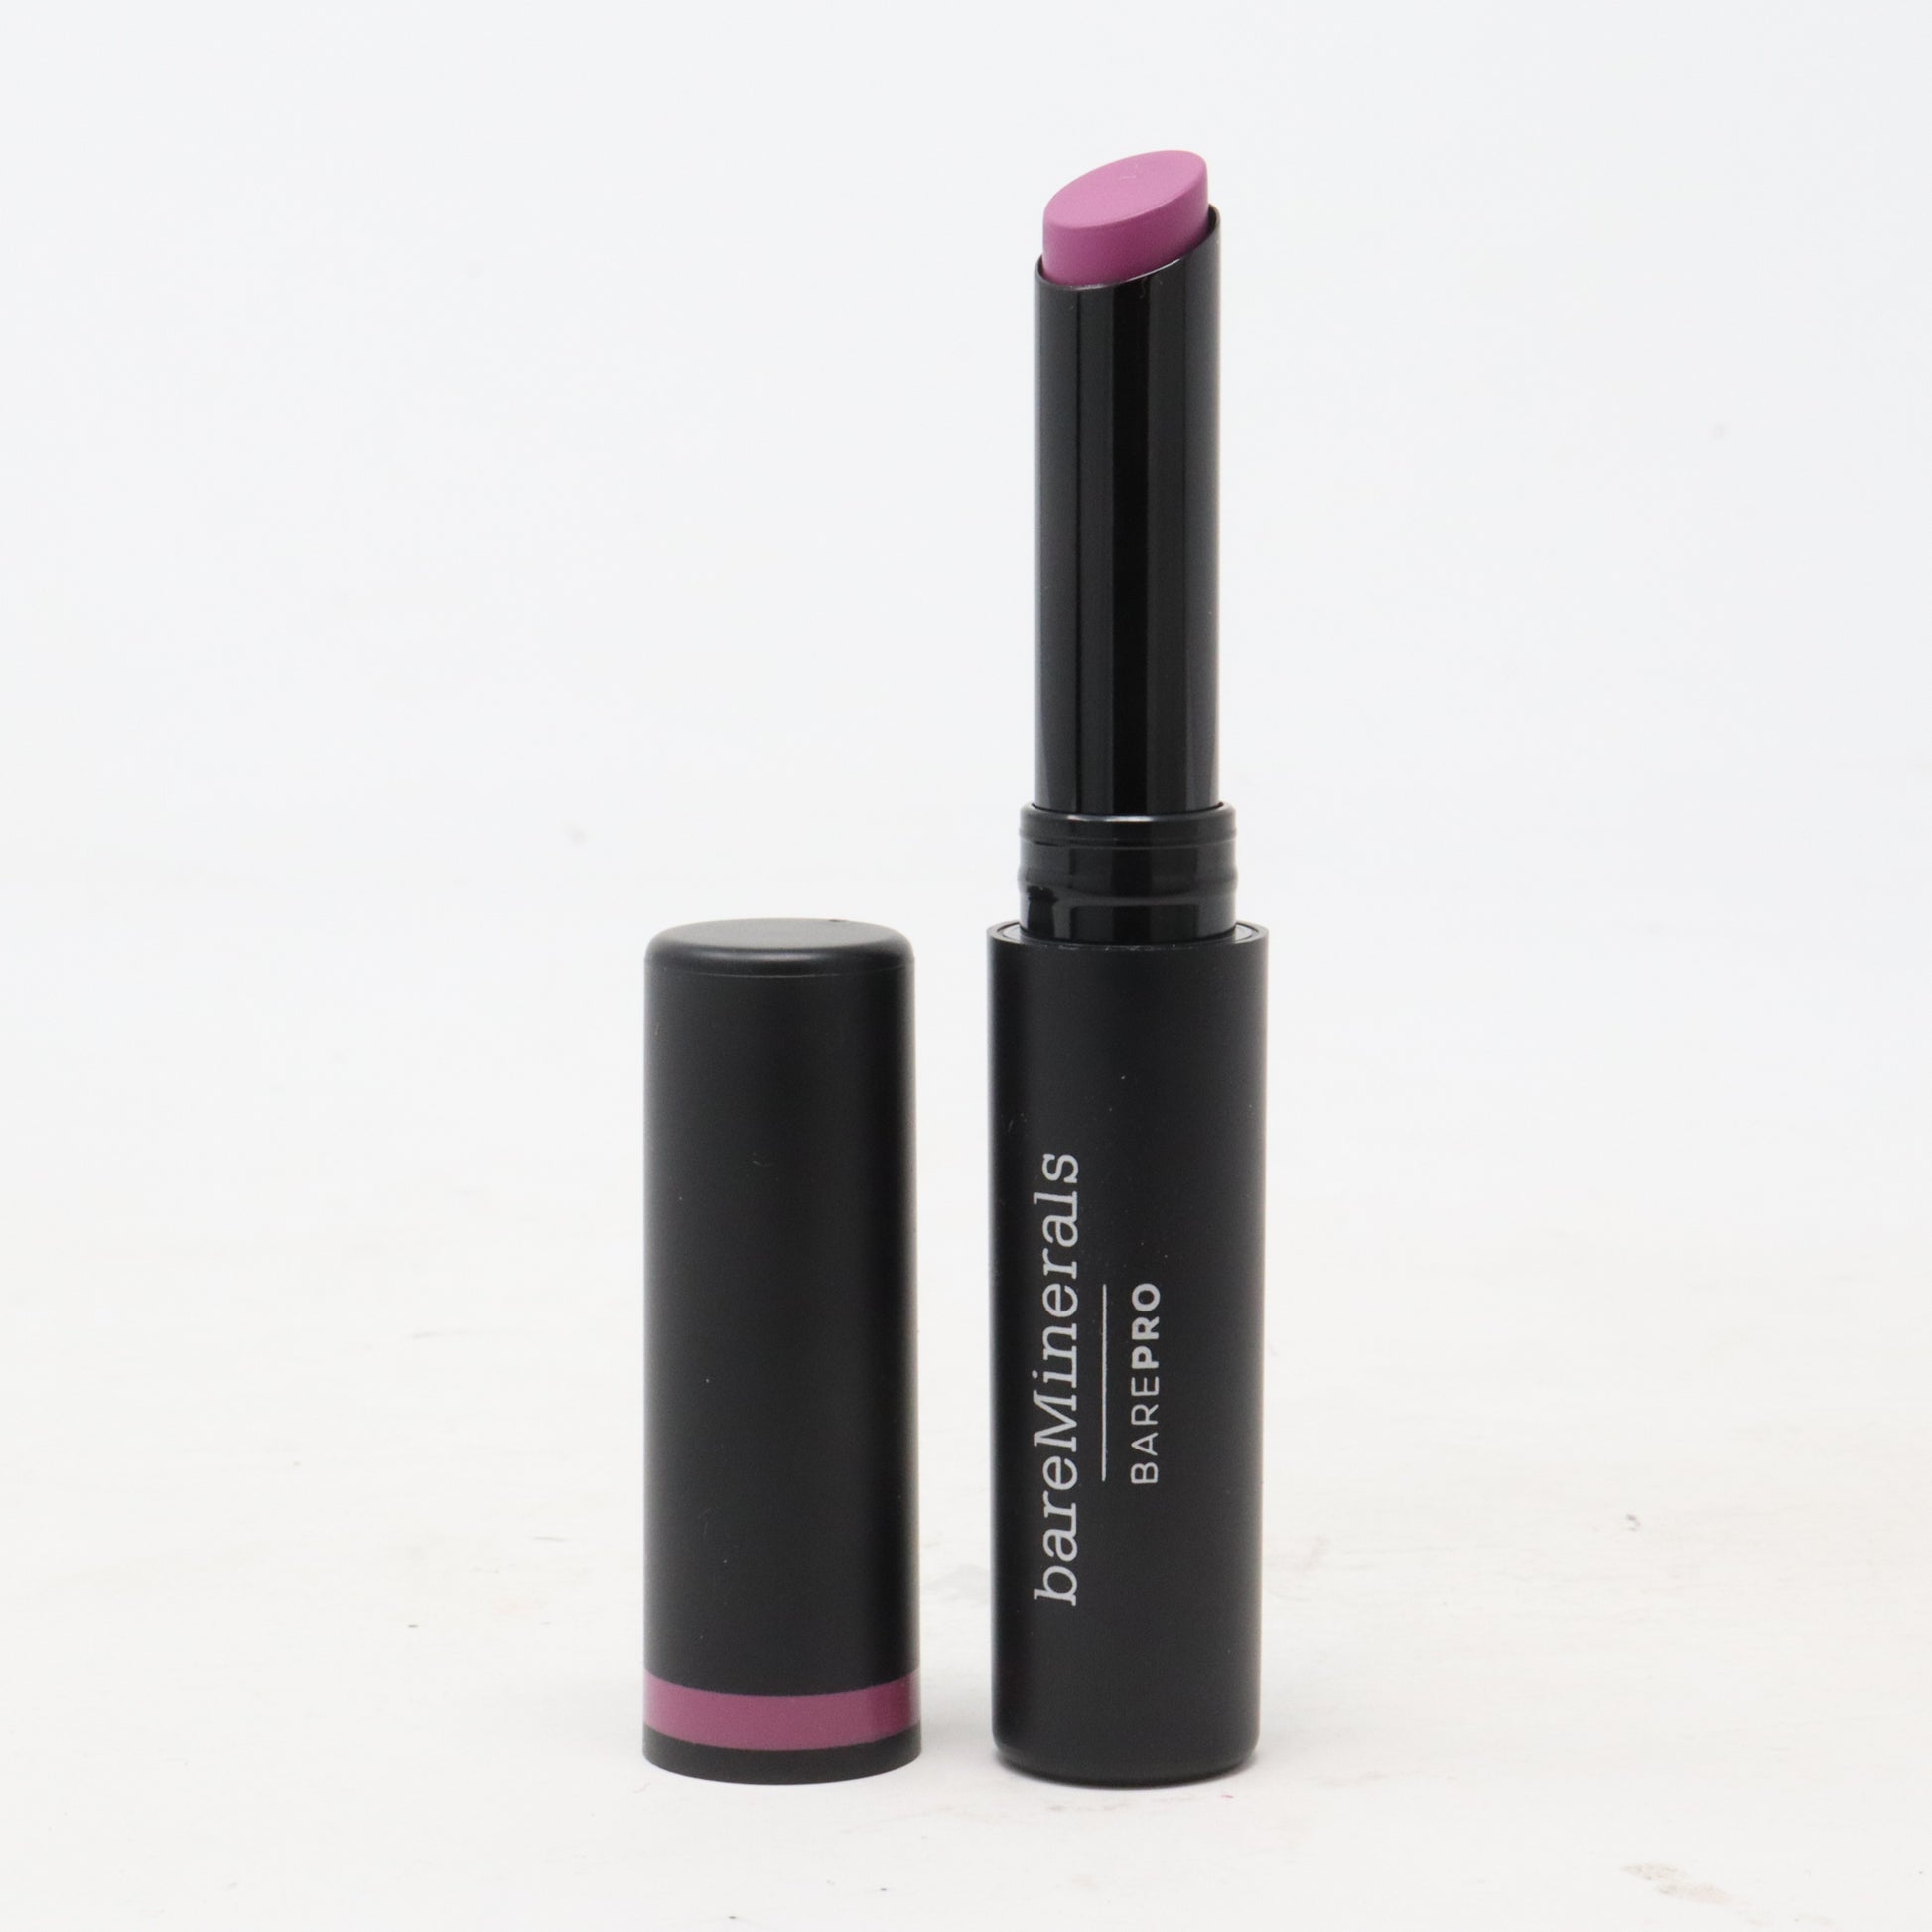 Barepro Longwear Lipstick